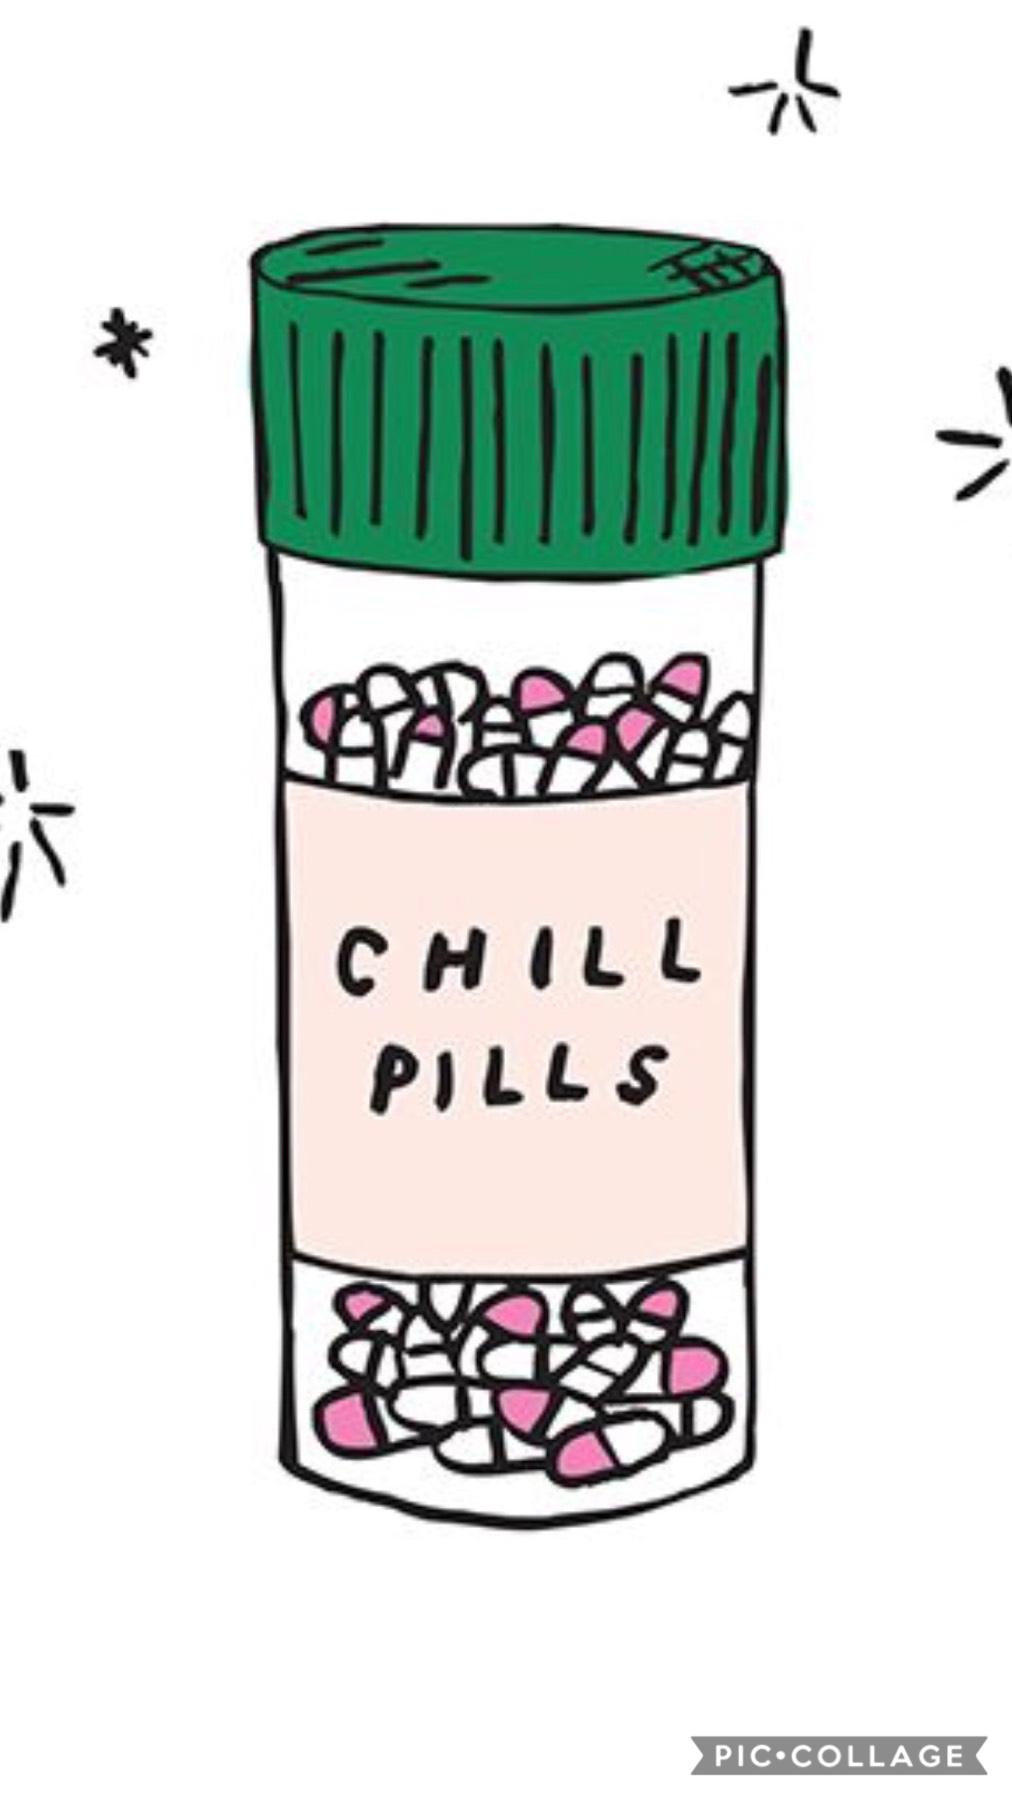 Chi I’ll pills





Please do not copy